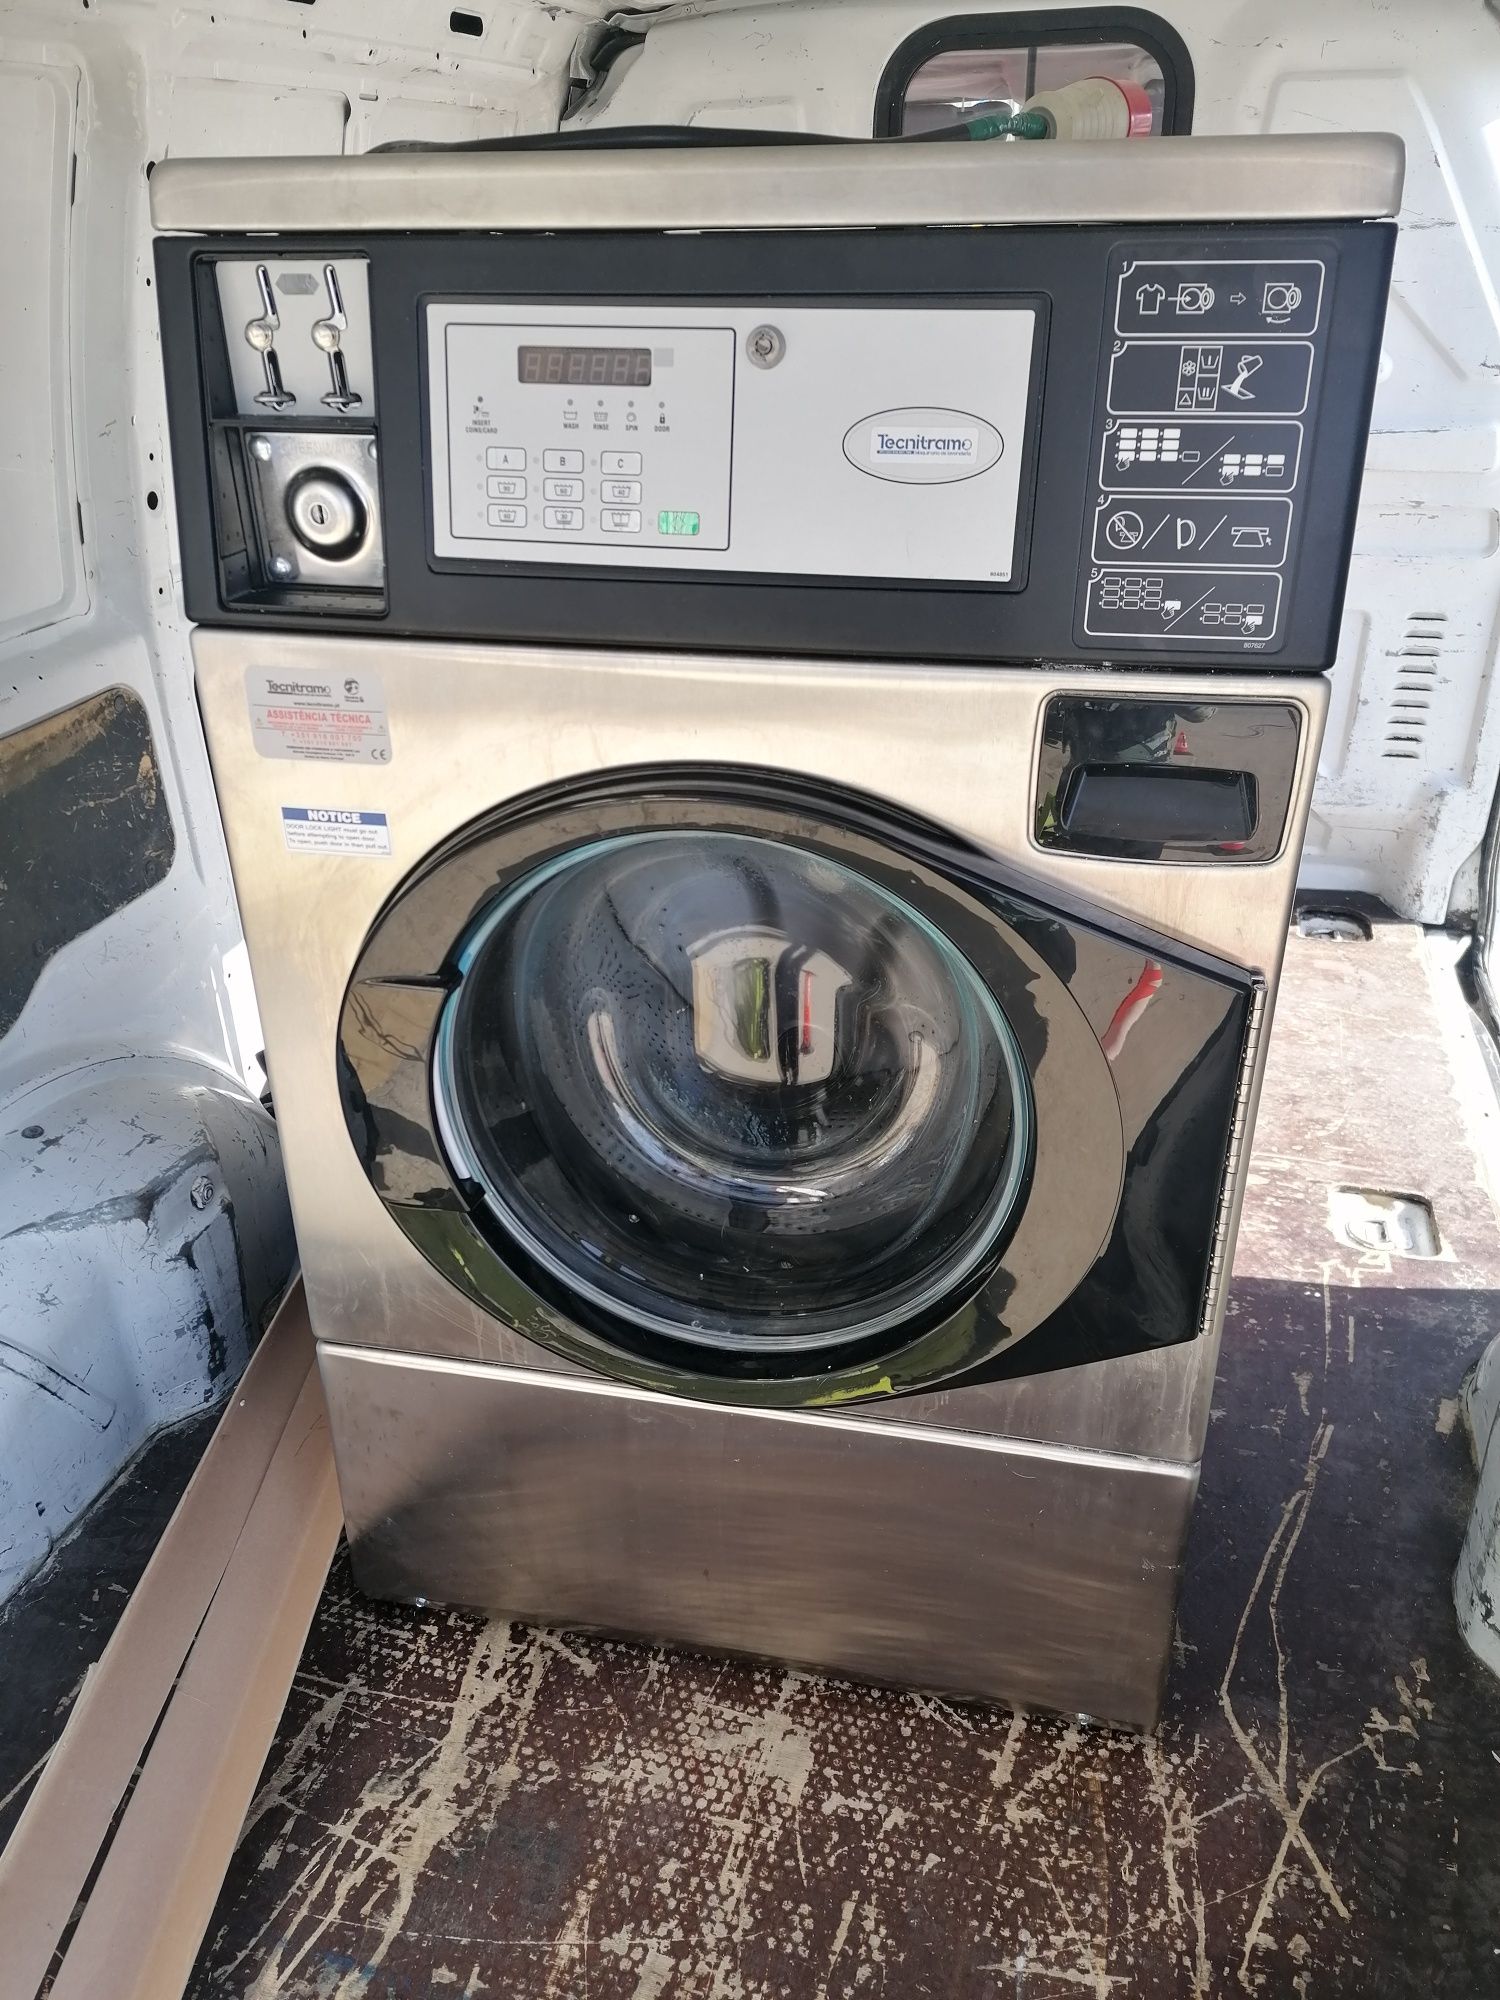 Self service máquina de lavar roupa industrial